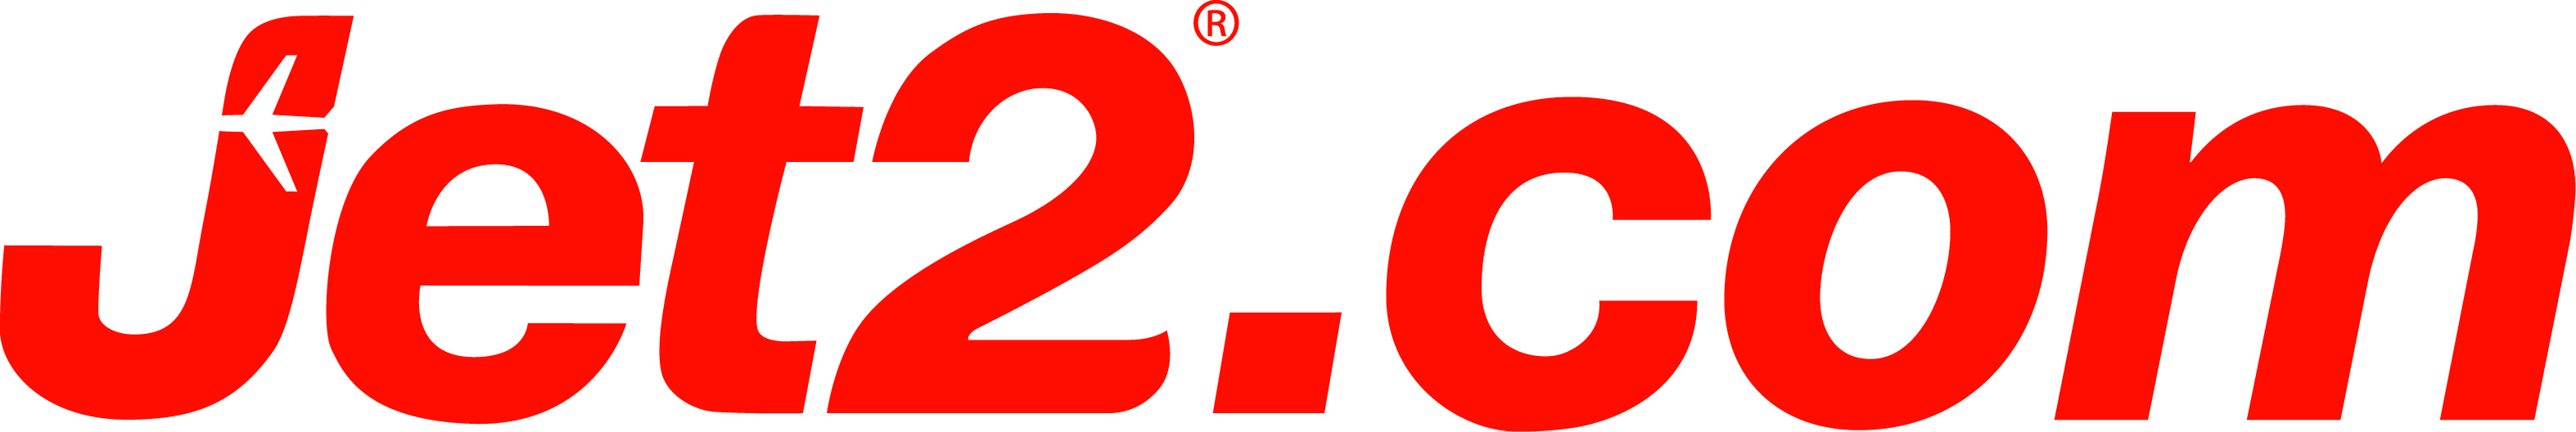 jet2 logo UK Contact Numbers